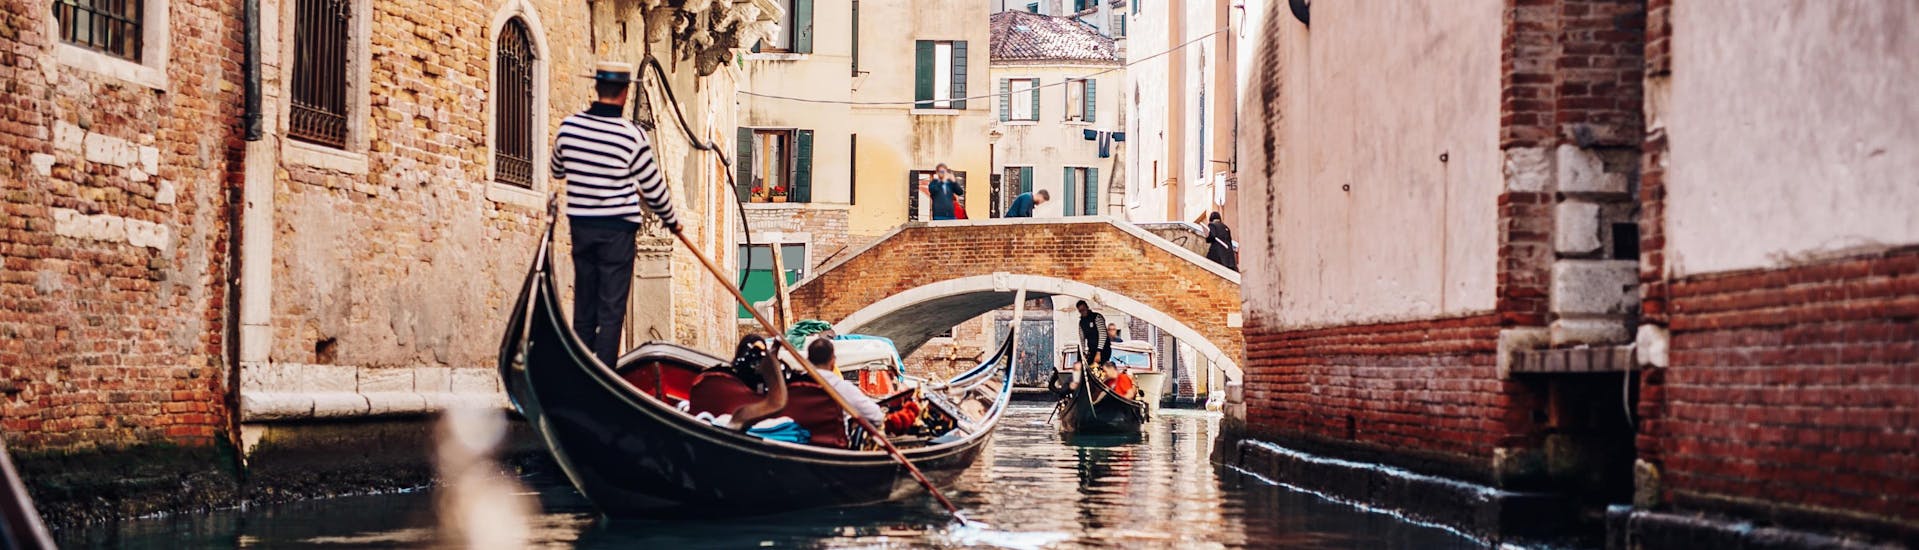 Un gondoliere sta remando attraverso uno stretto canale durante un giro in gondola a Venezia.